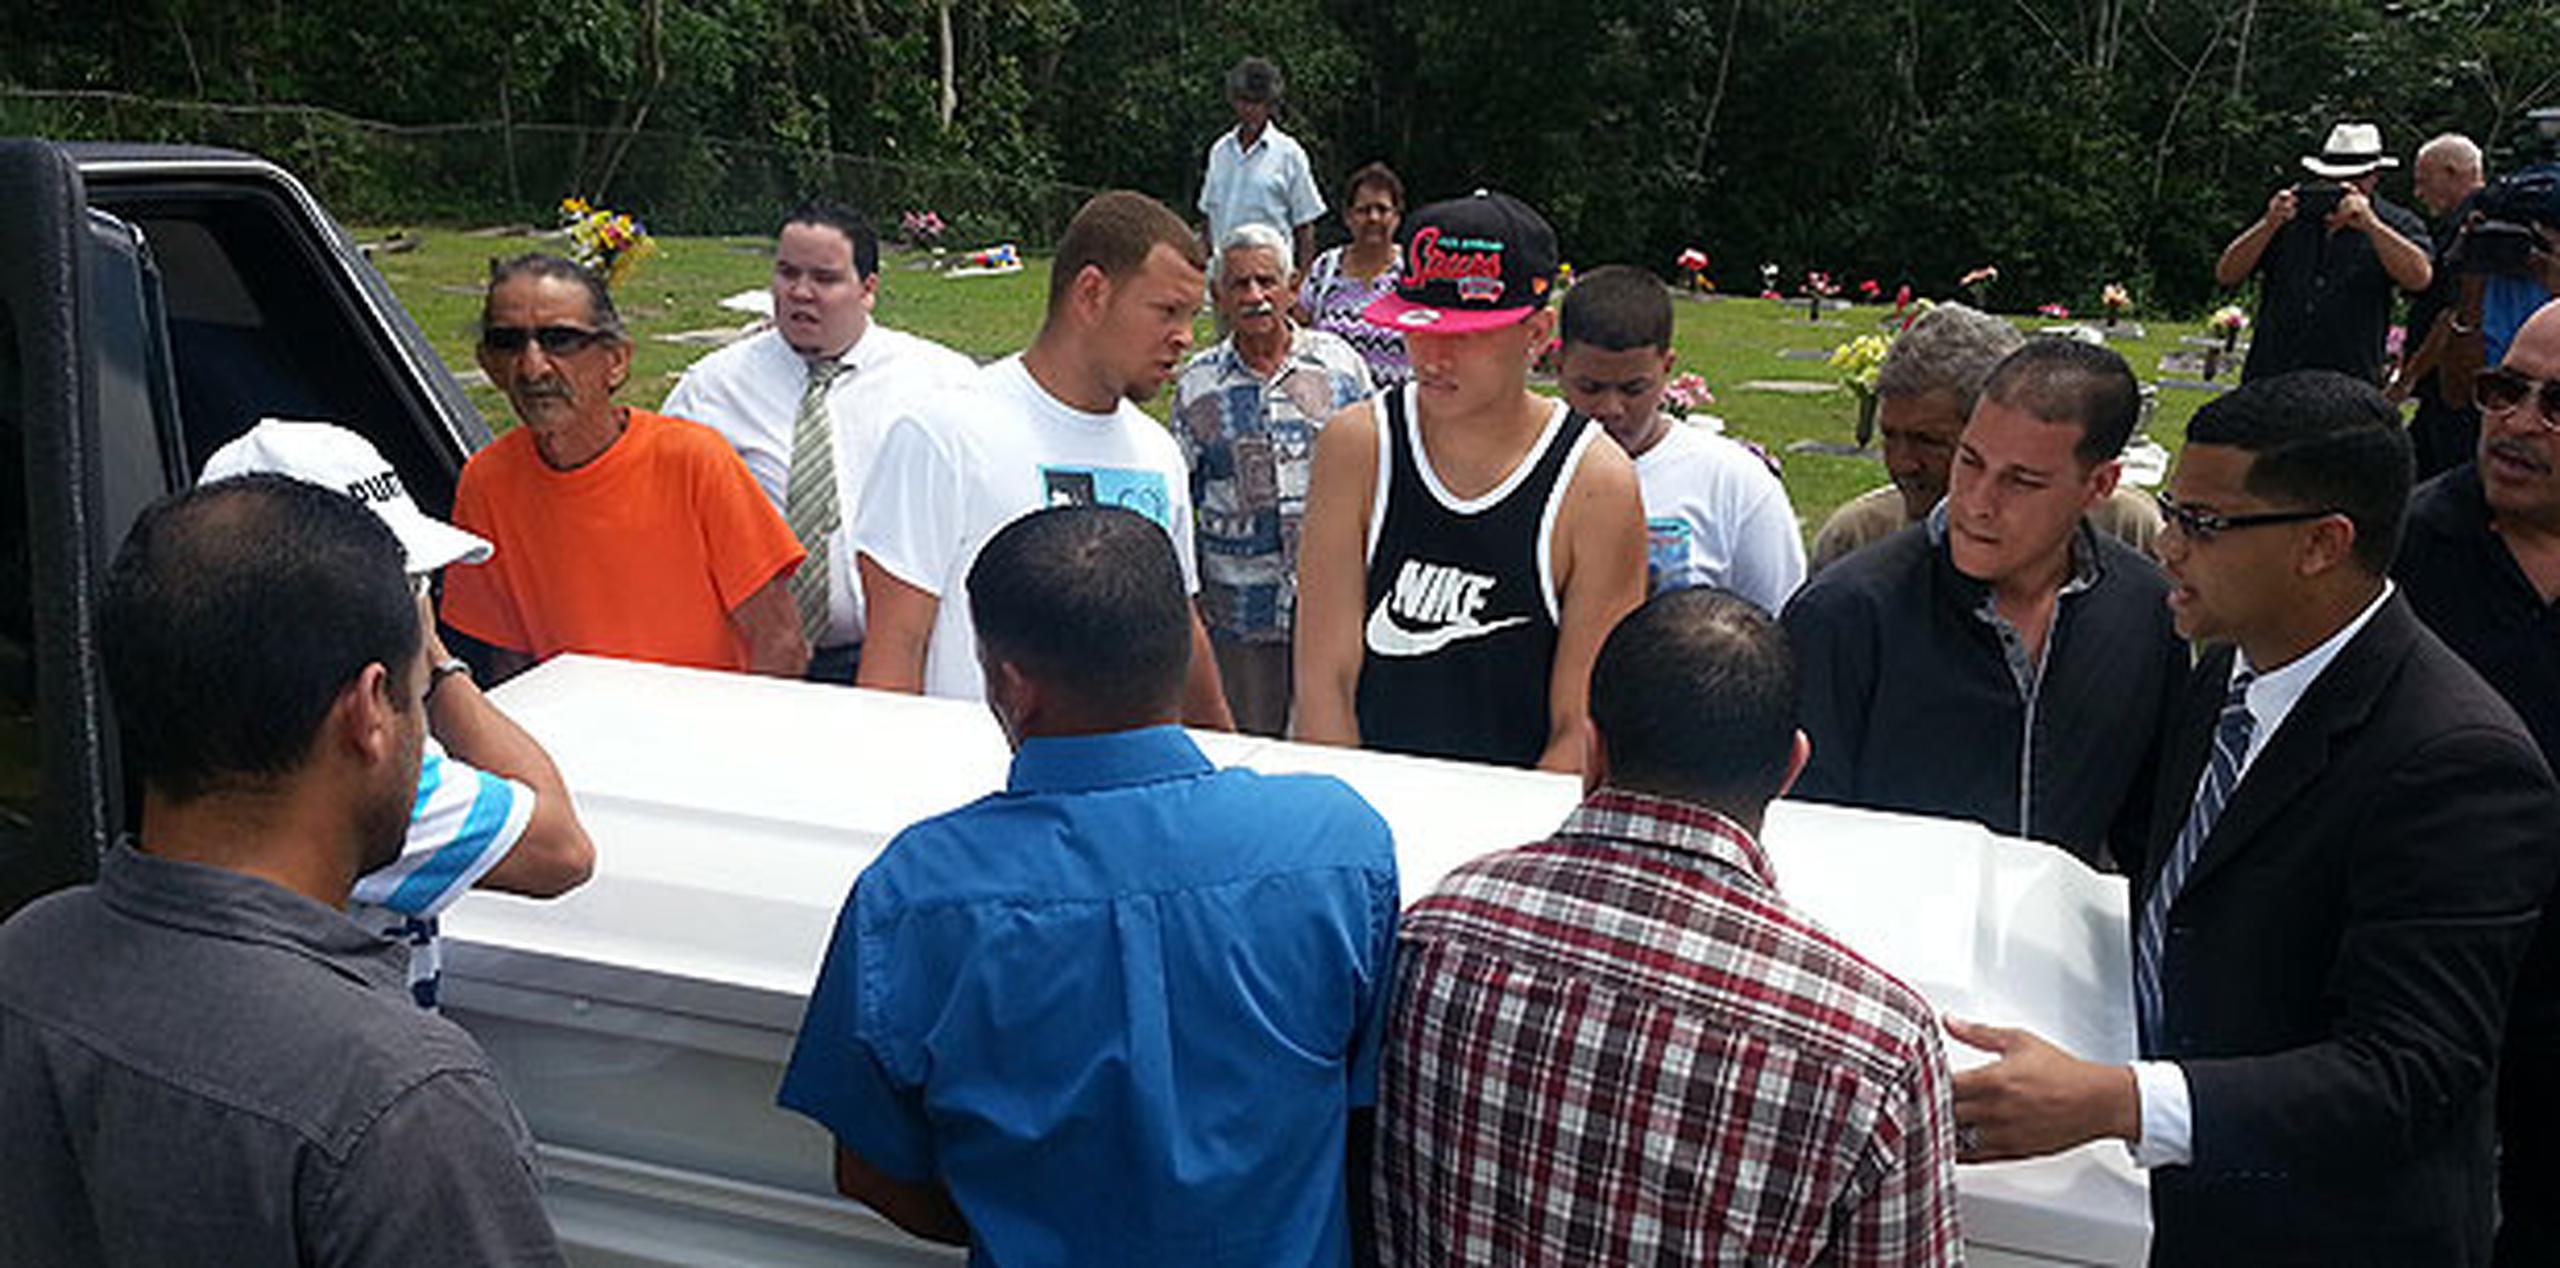 El último adiós a la víctima se llevó a cabo en el cementerio Señorial Memorial Park, en Cupey. (xavier.araujo@gfrmedia.com)